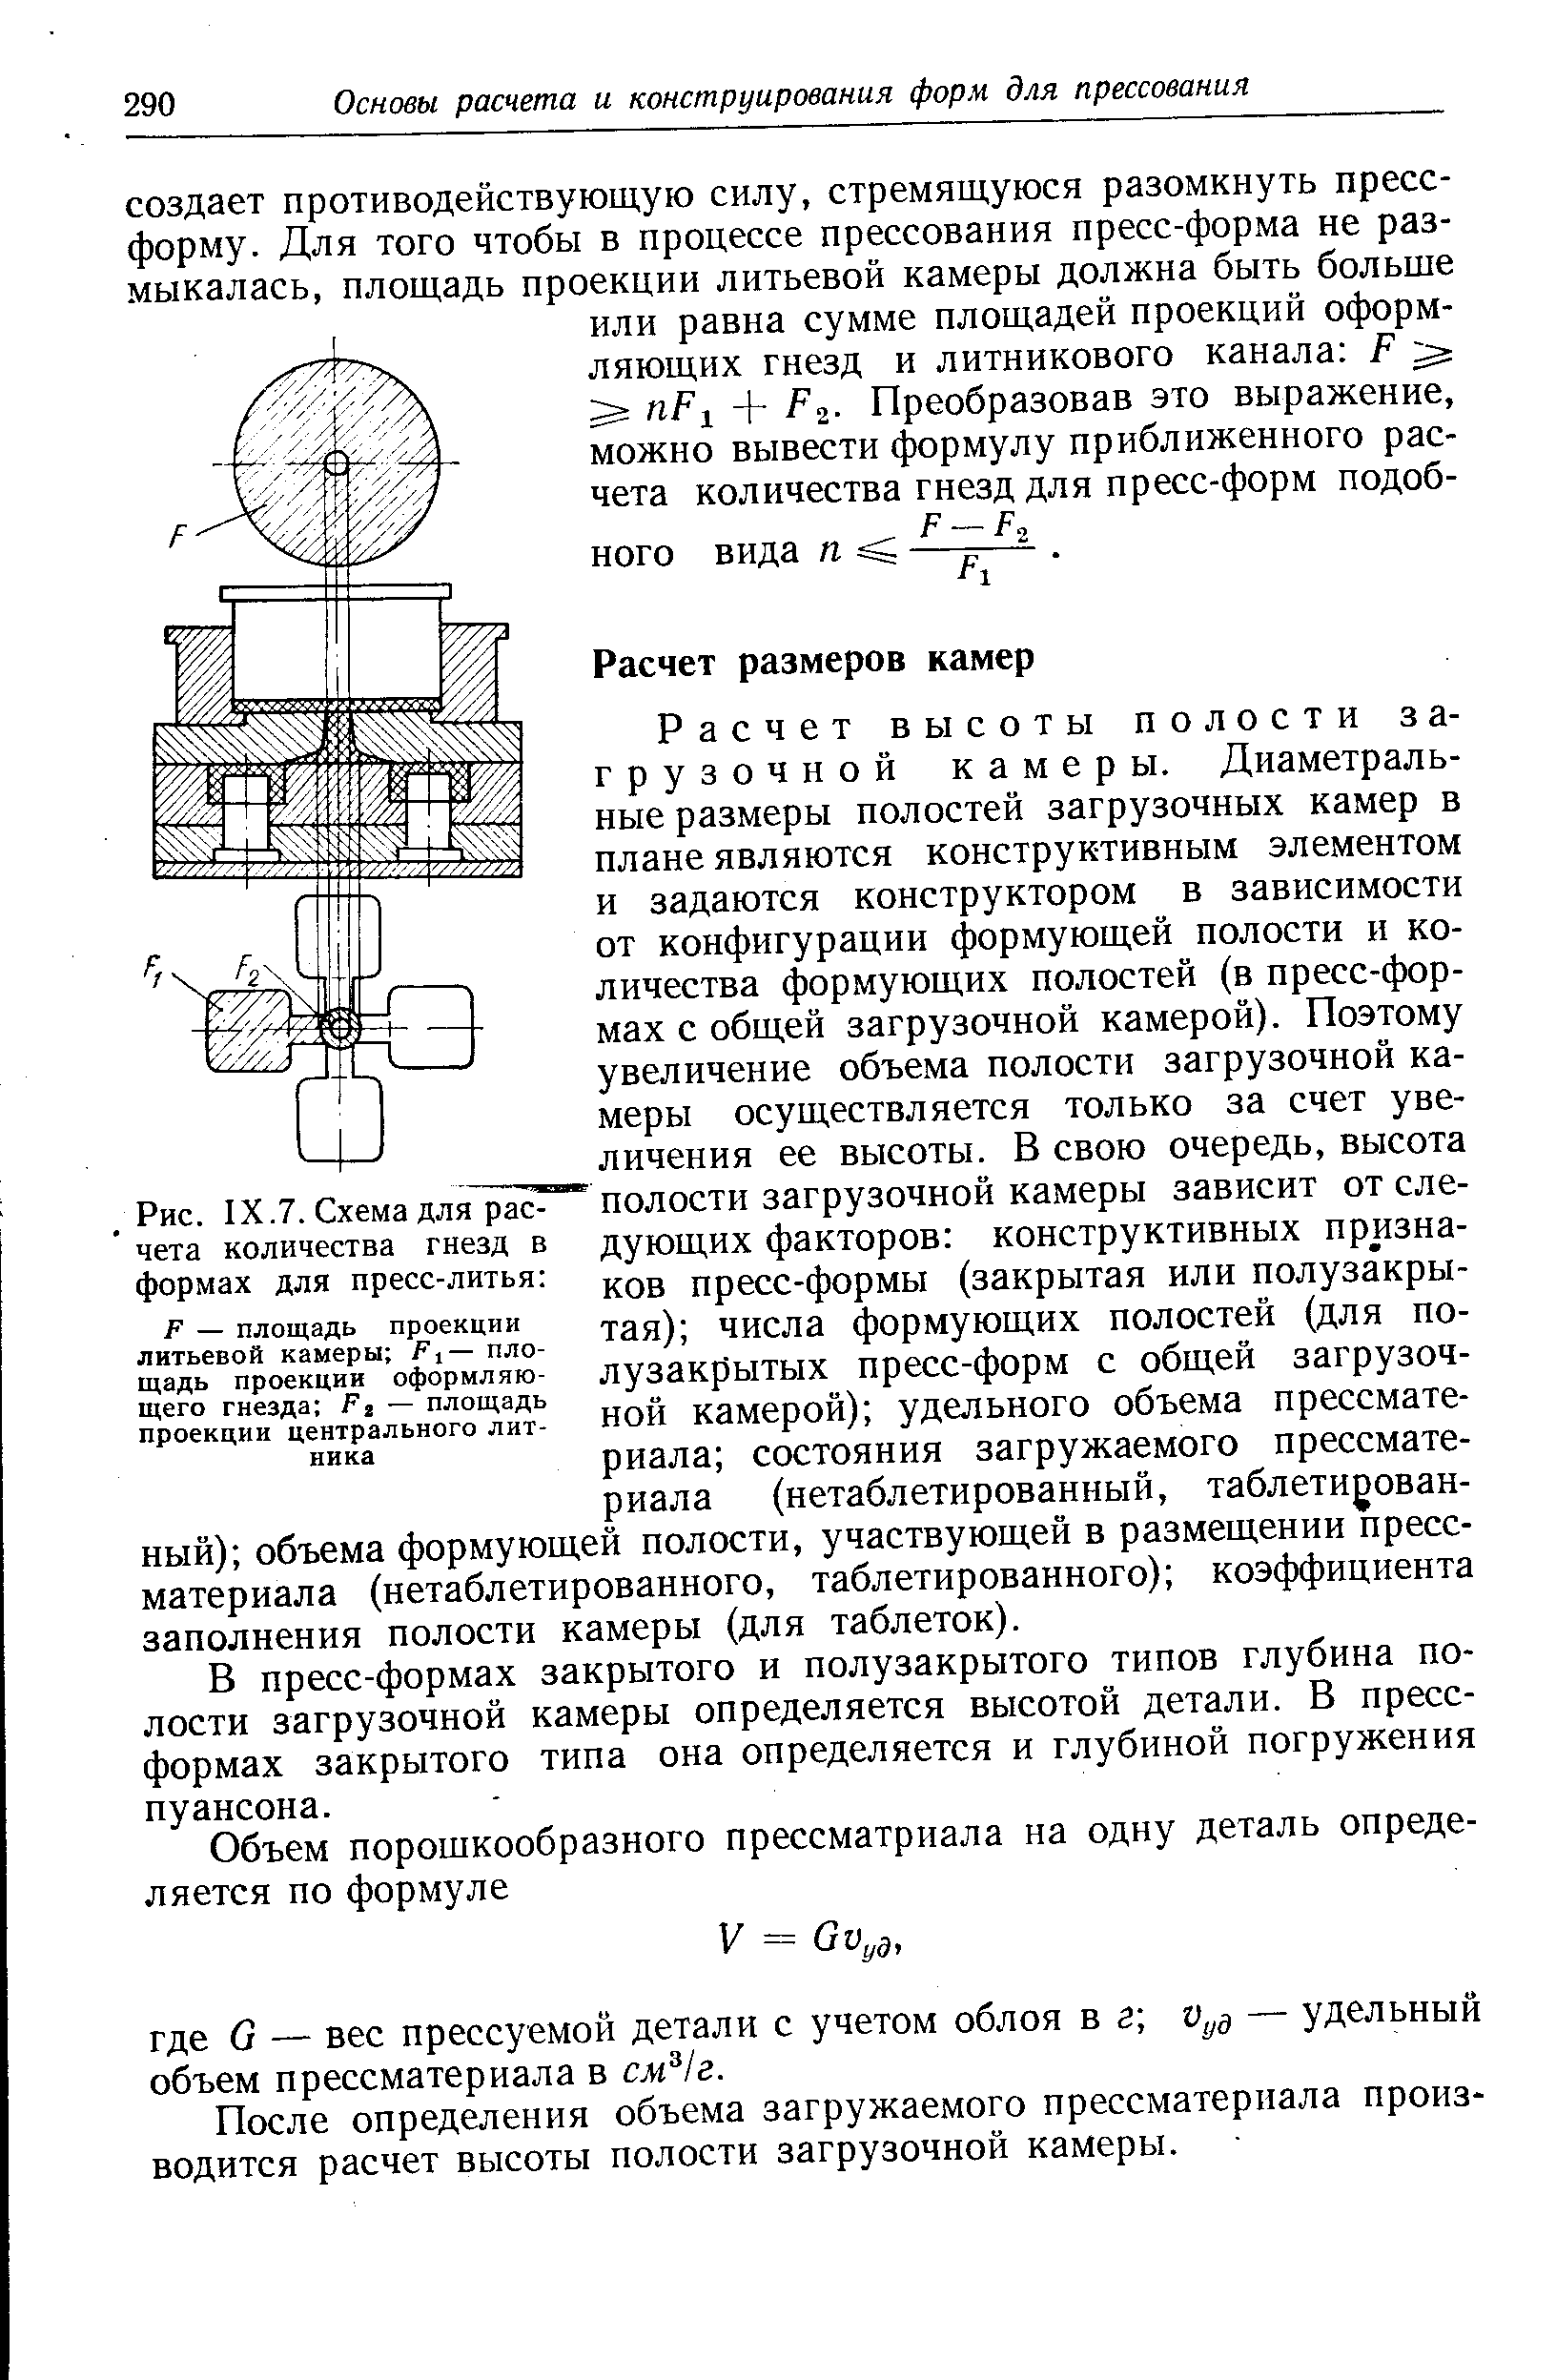 Рис. IX.7. Схема для расчета количества гнезд в формах для пресс-литья 
